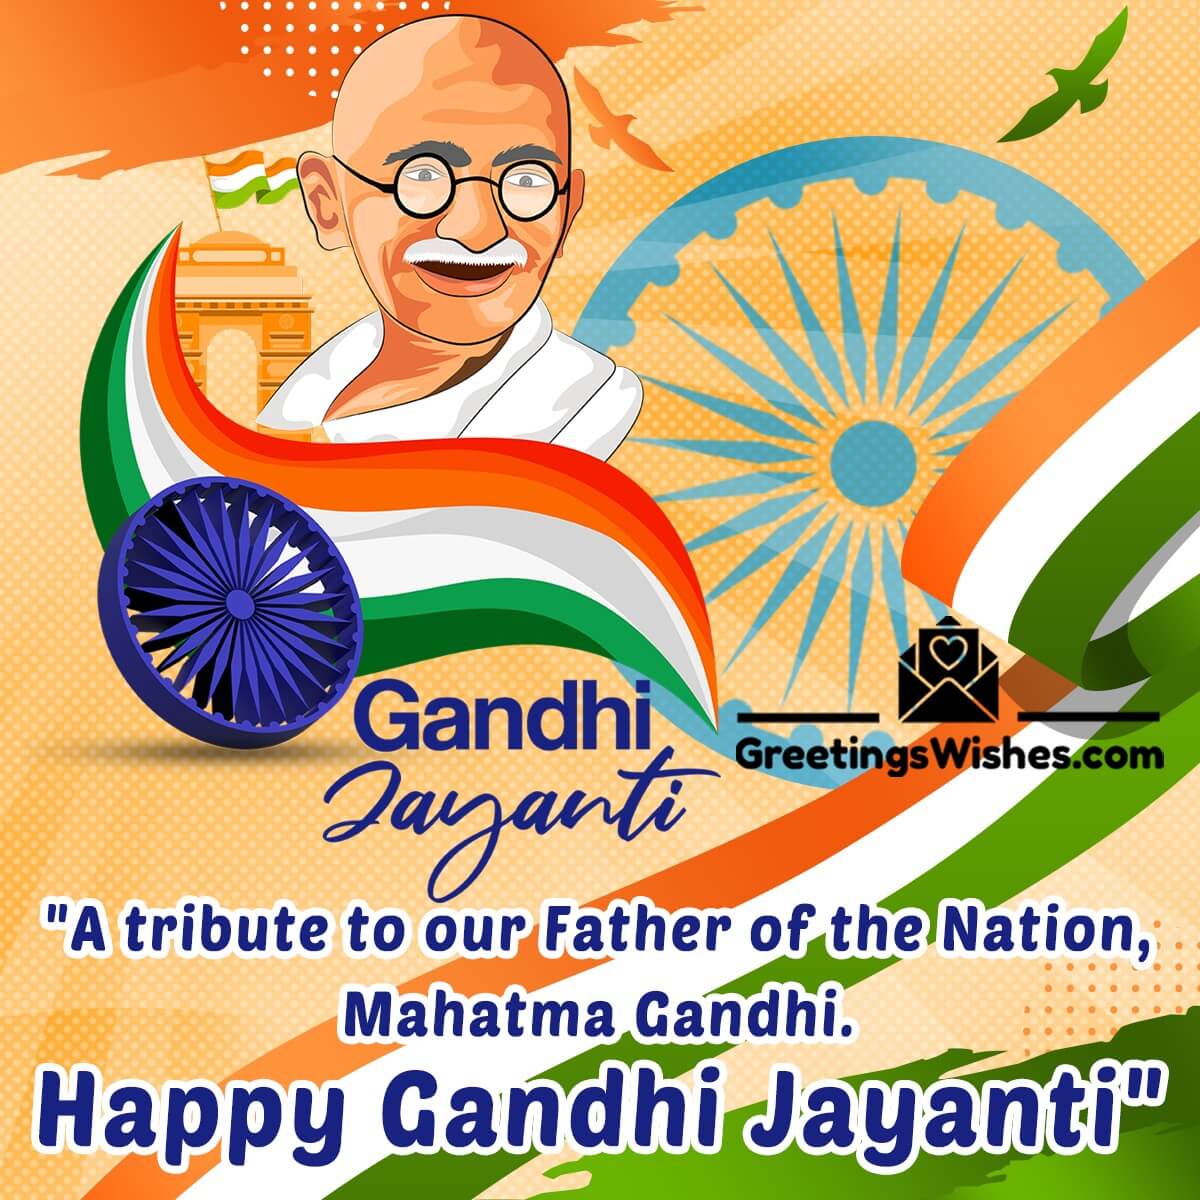 Happy Gandhi Jayanti Message